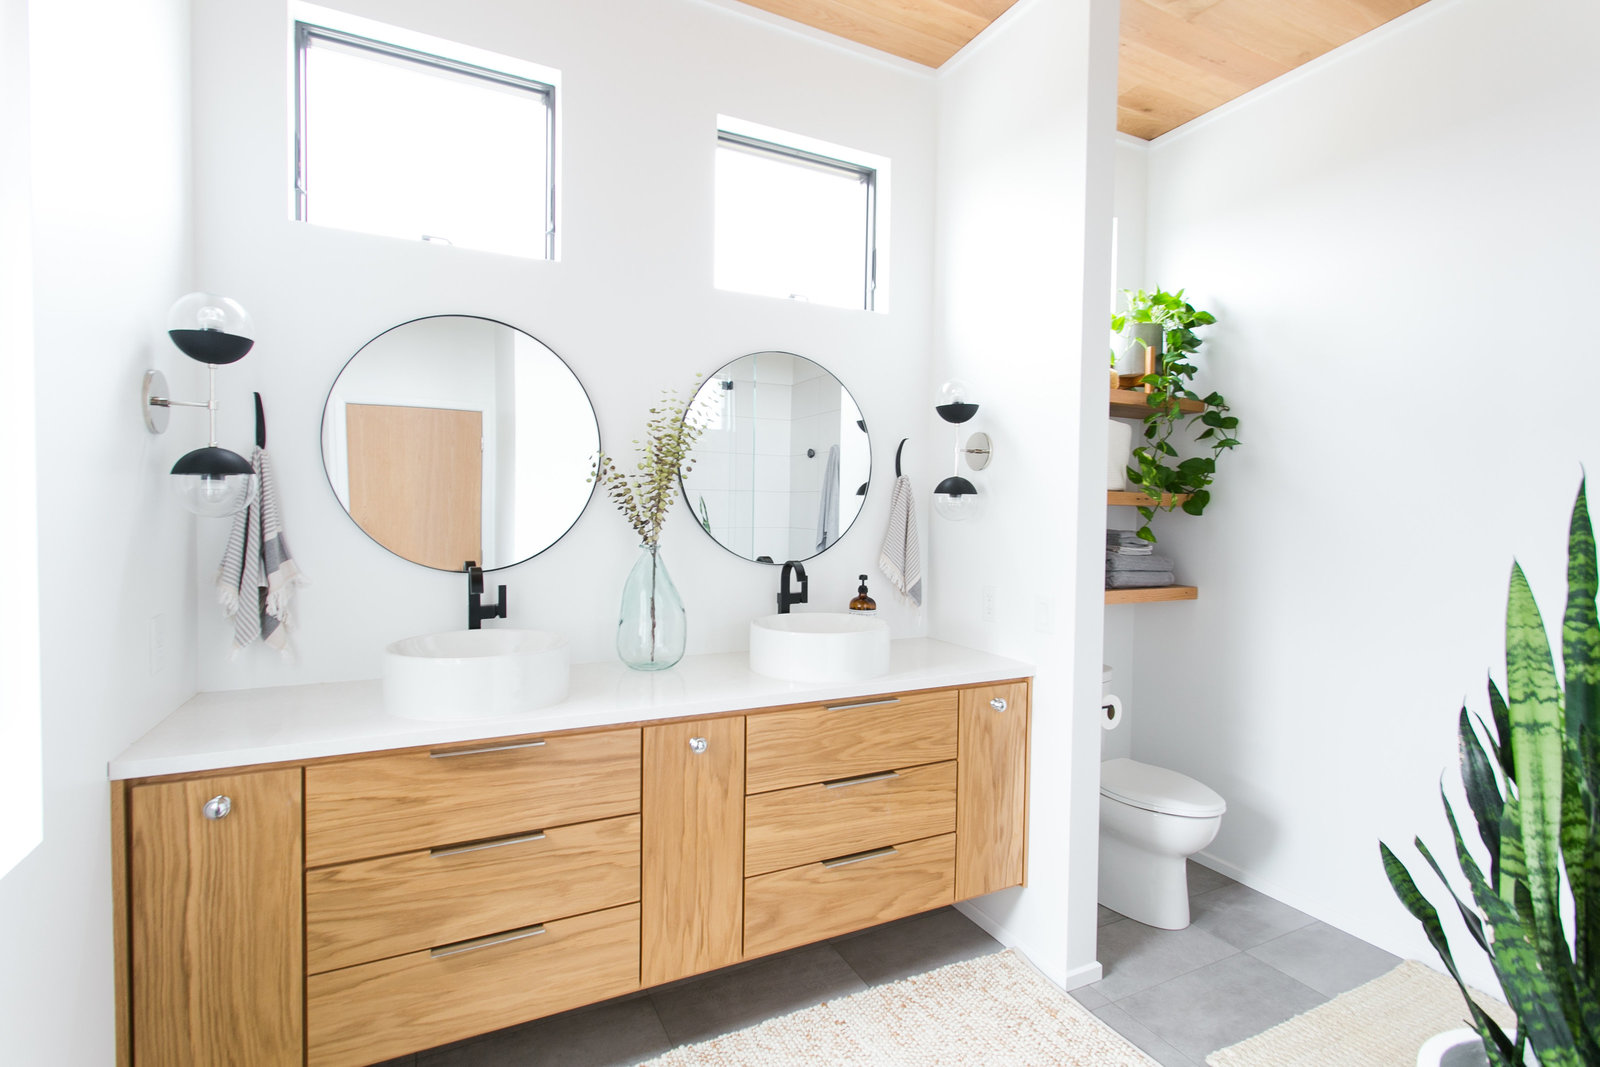 Modern master bathroom design with vessel sinks, floating shelves and vanity